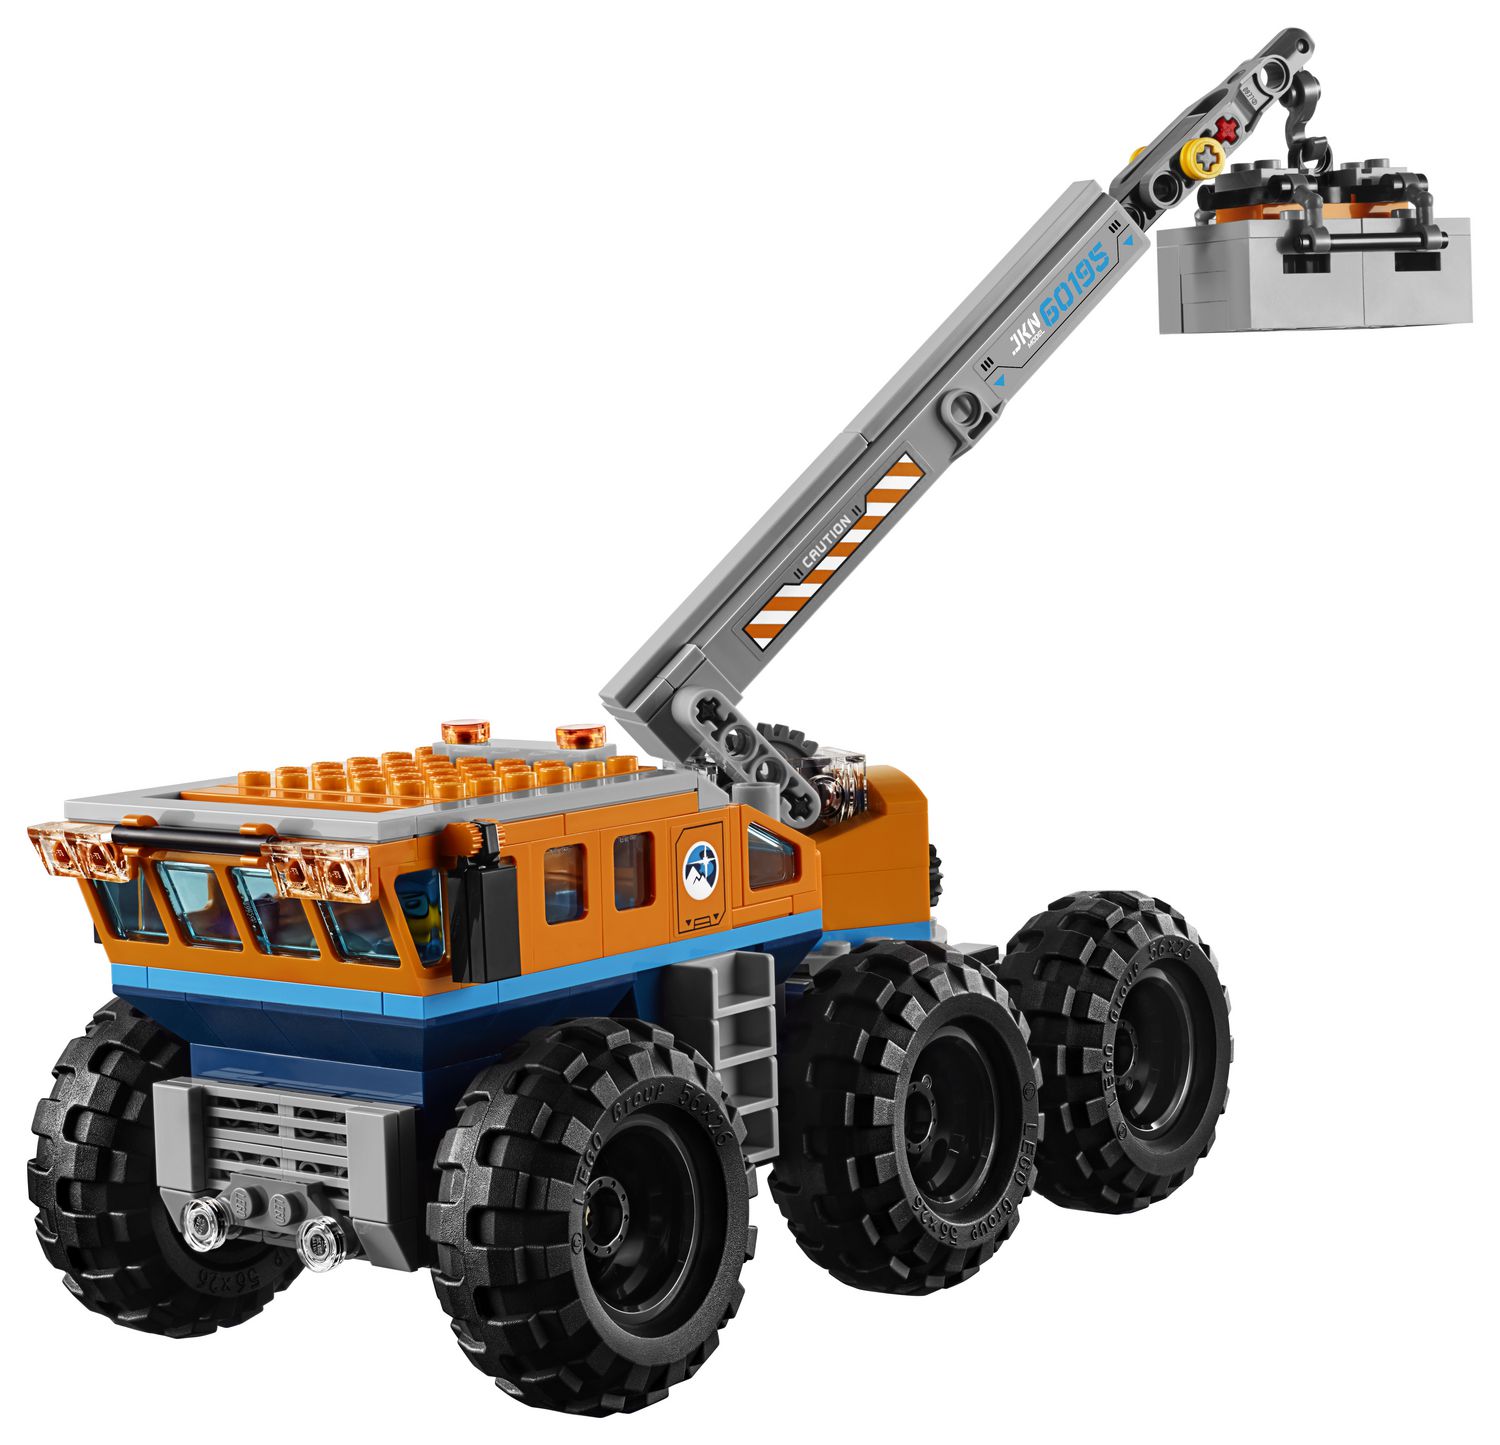 LEGO City Arctic Mobile Exploration Base 60195 Building Kit (786